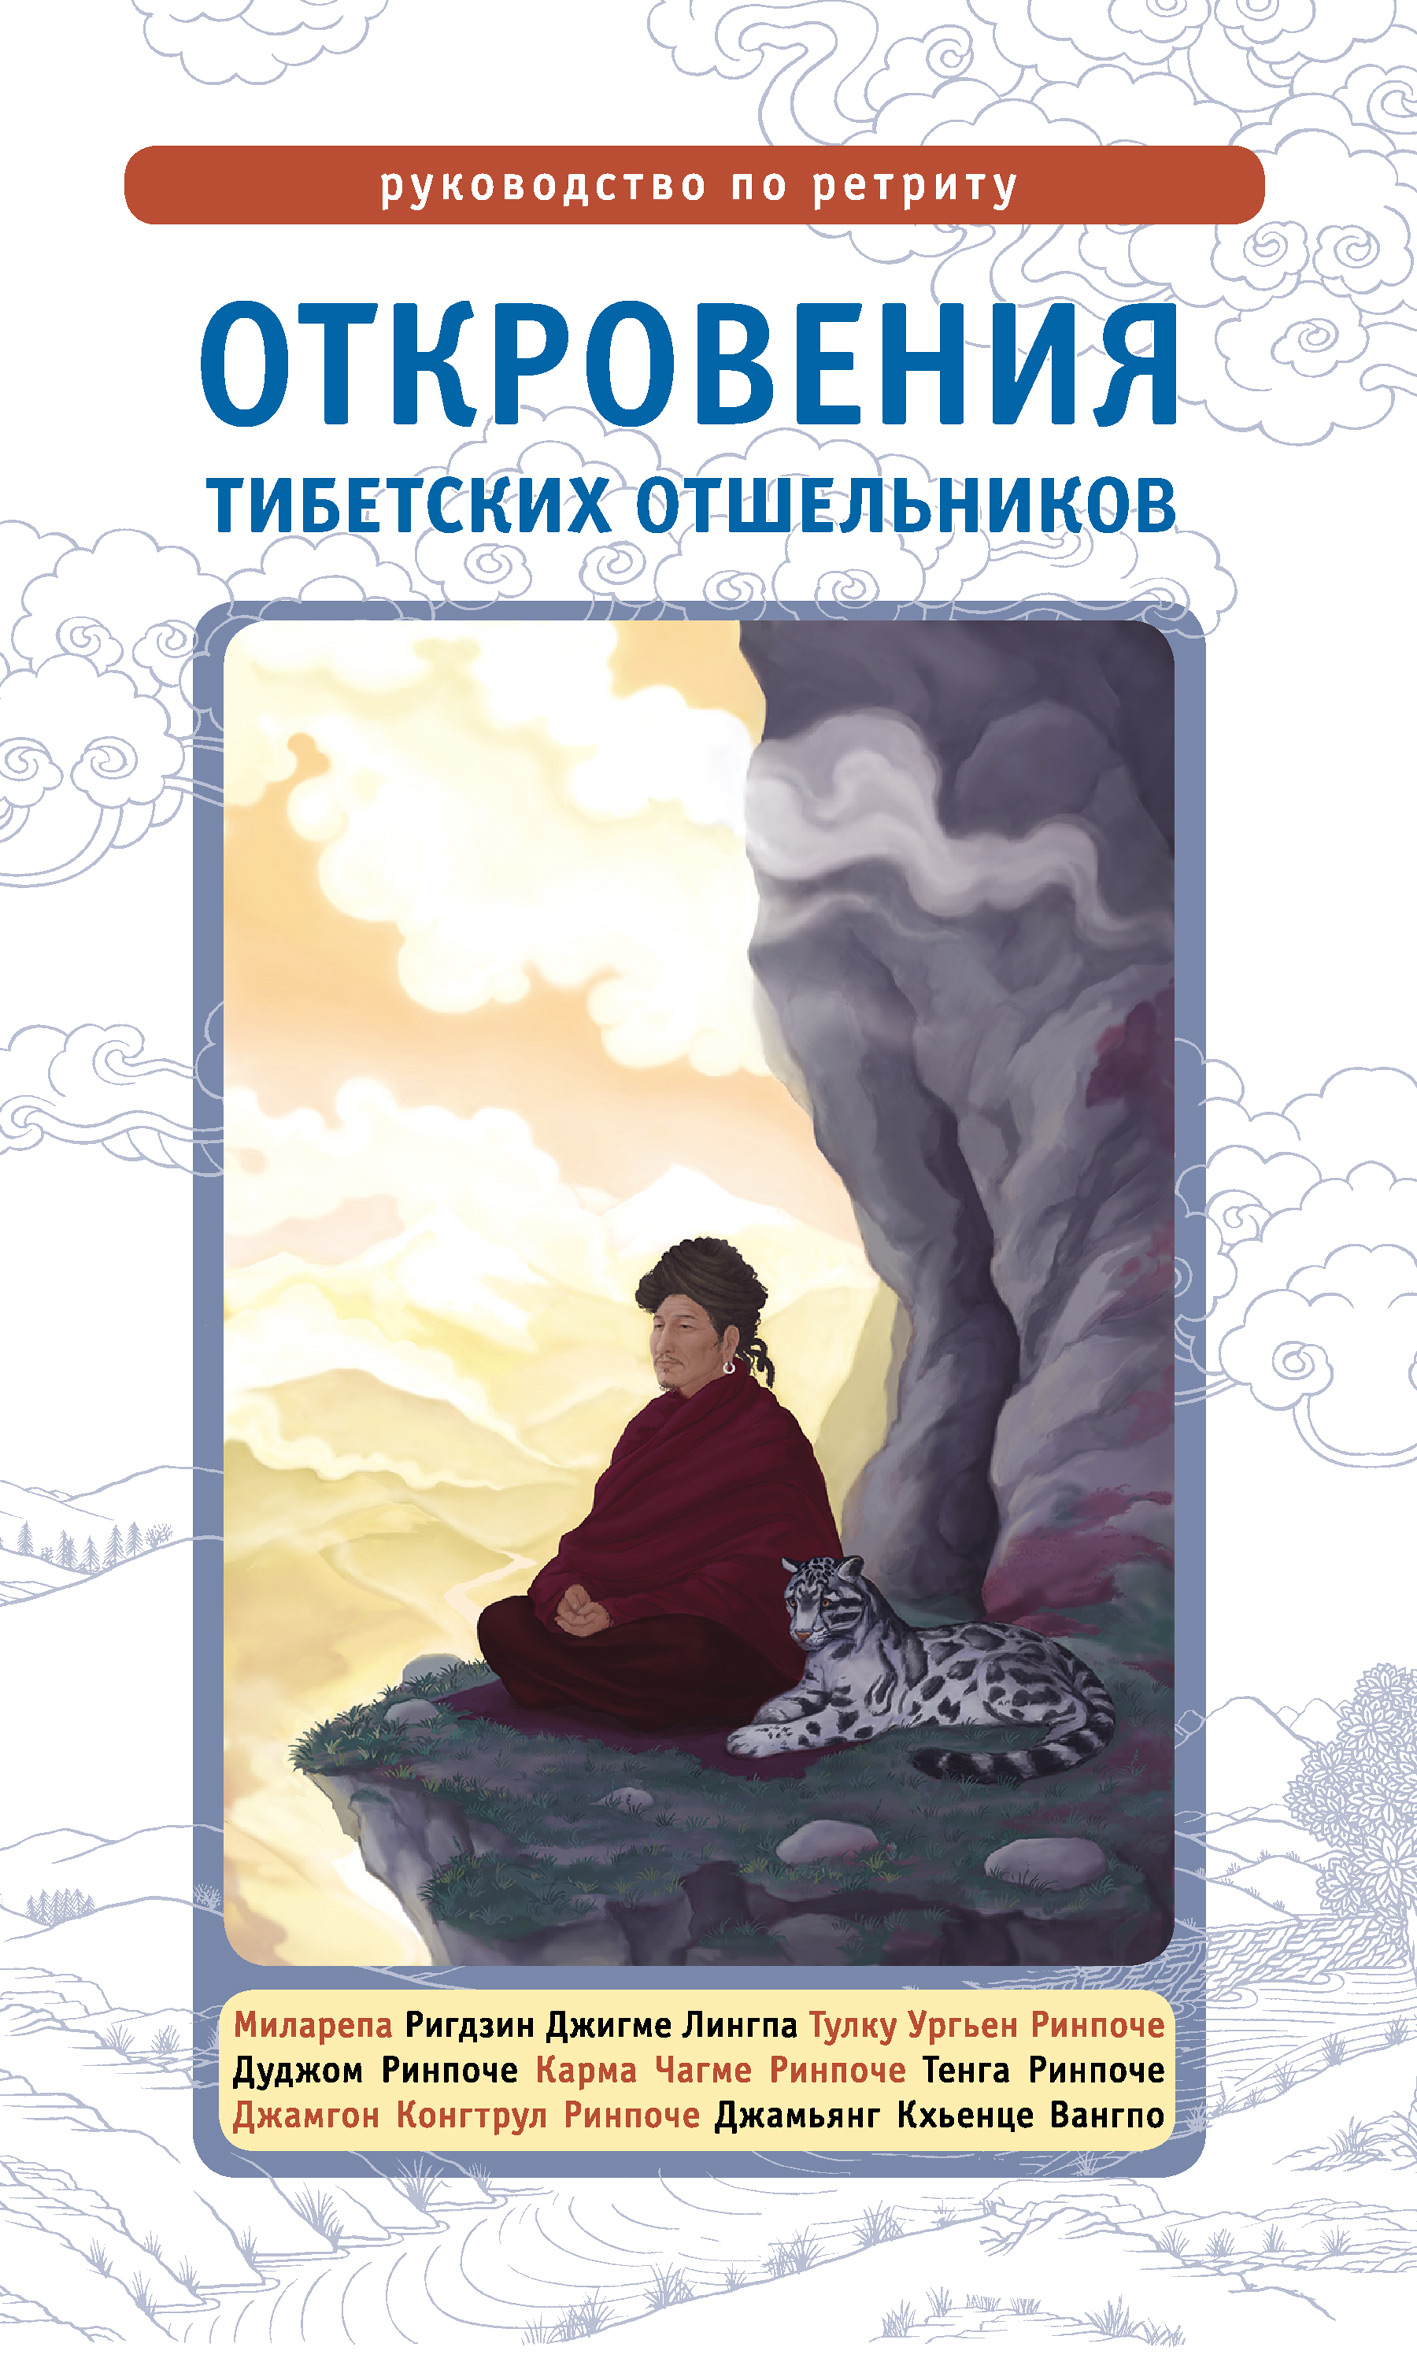 Книга Откровения тибетских отшельников. Руководство по ретриту из серии , созданная Лама Сонам Дордже, может относится к жанру Зарубежная эзотерическая и религиозная литература, Религиозные тексты. Стоимость электронной книги Откровения тибетских отшельников. Руководство по ретриту с идентификатором 8611519 составляет 149.90 руб.